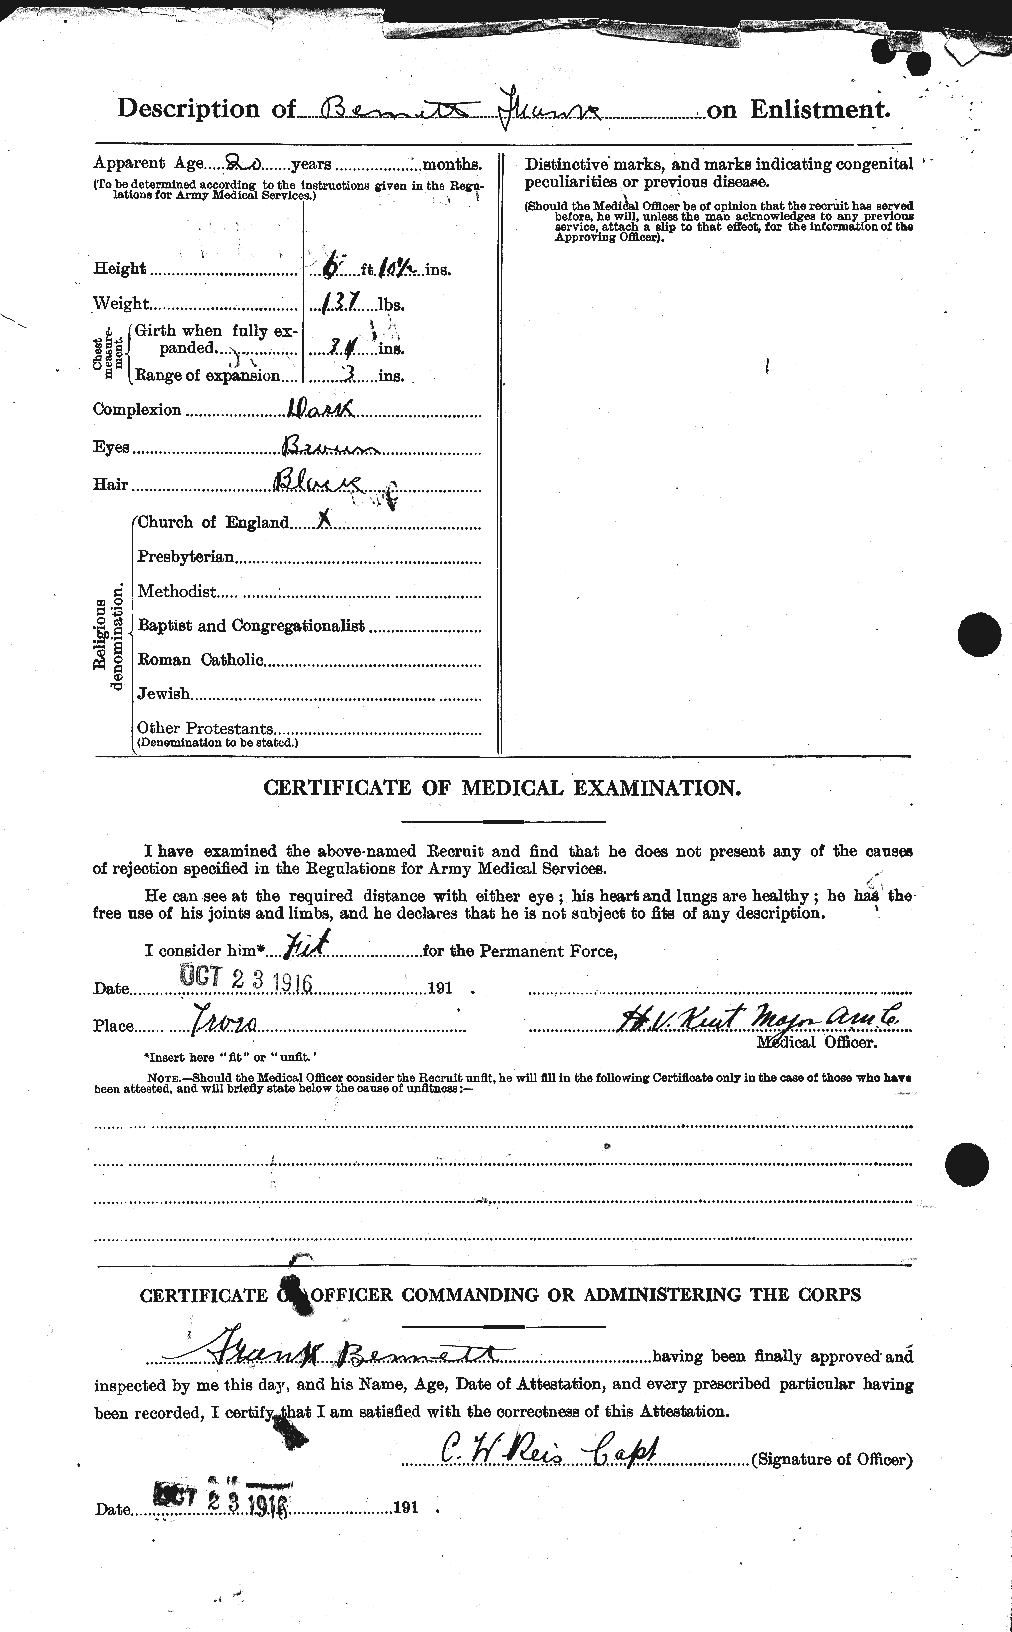 Dossiers du Personnel de la Première Guerre mondiale - CEC 233499b